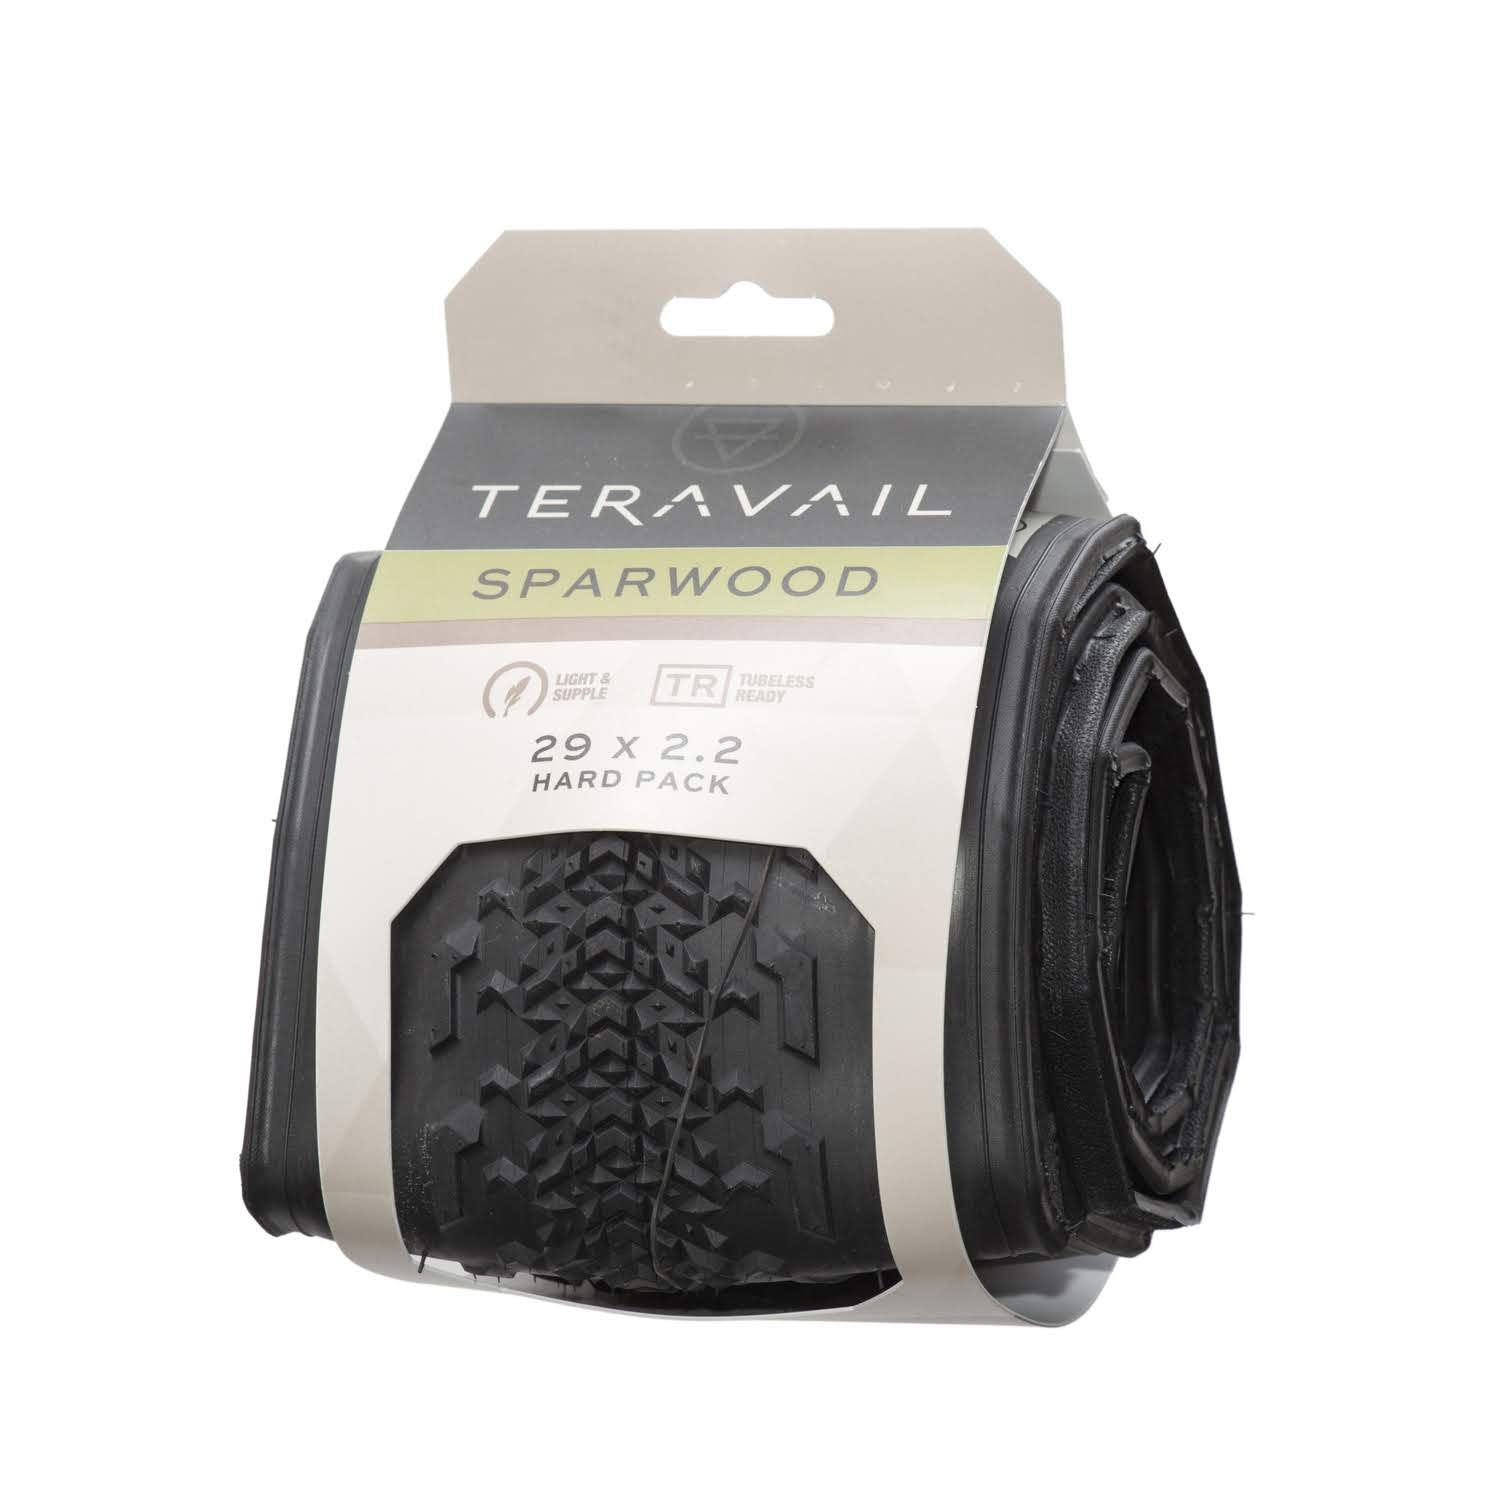 TERAVAIL Sparwood Light & Supple